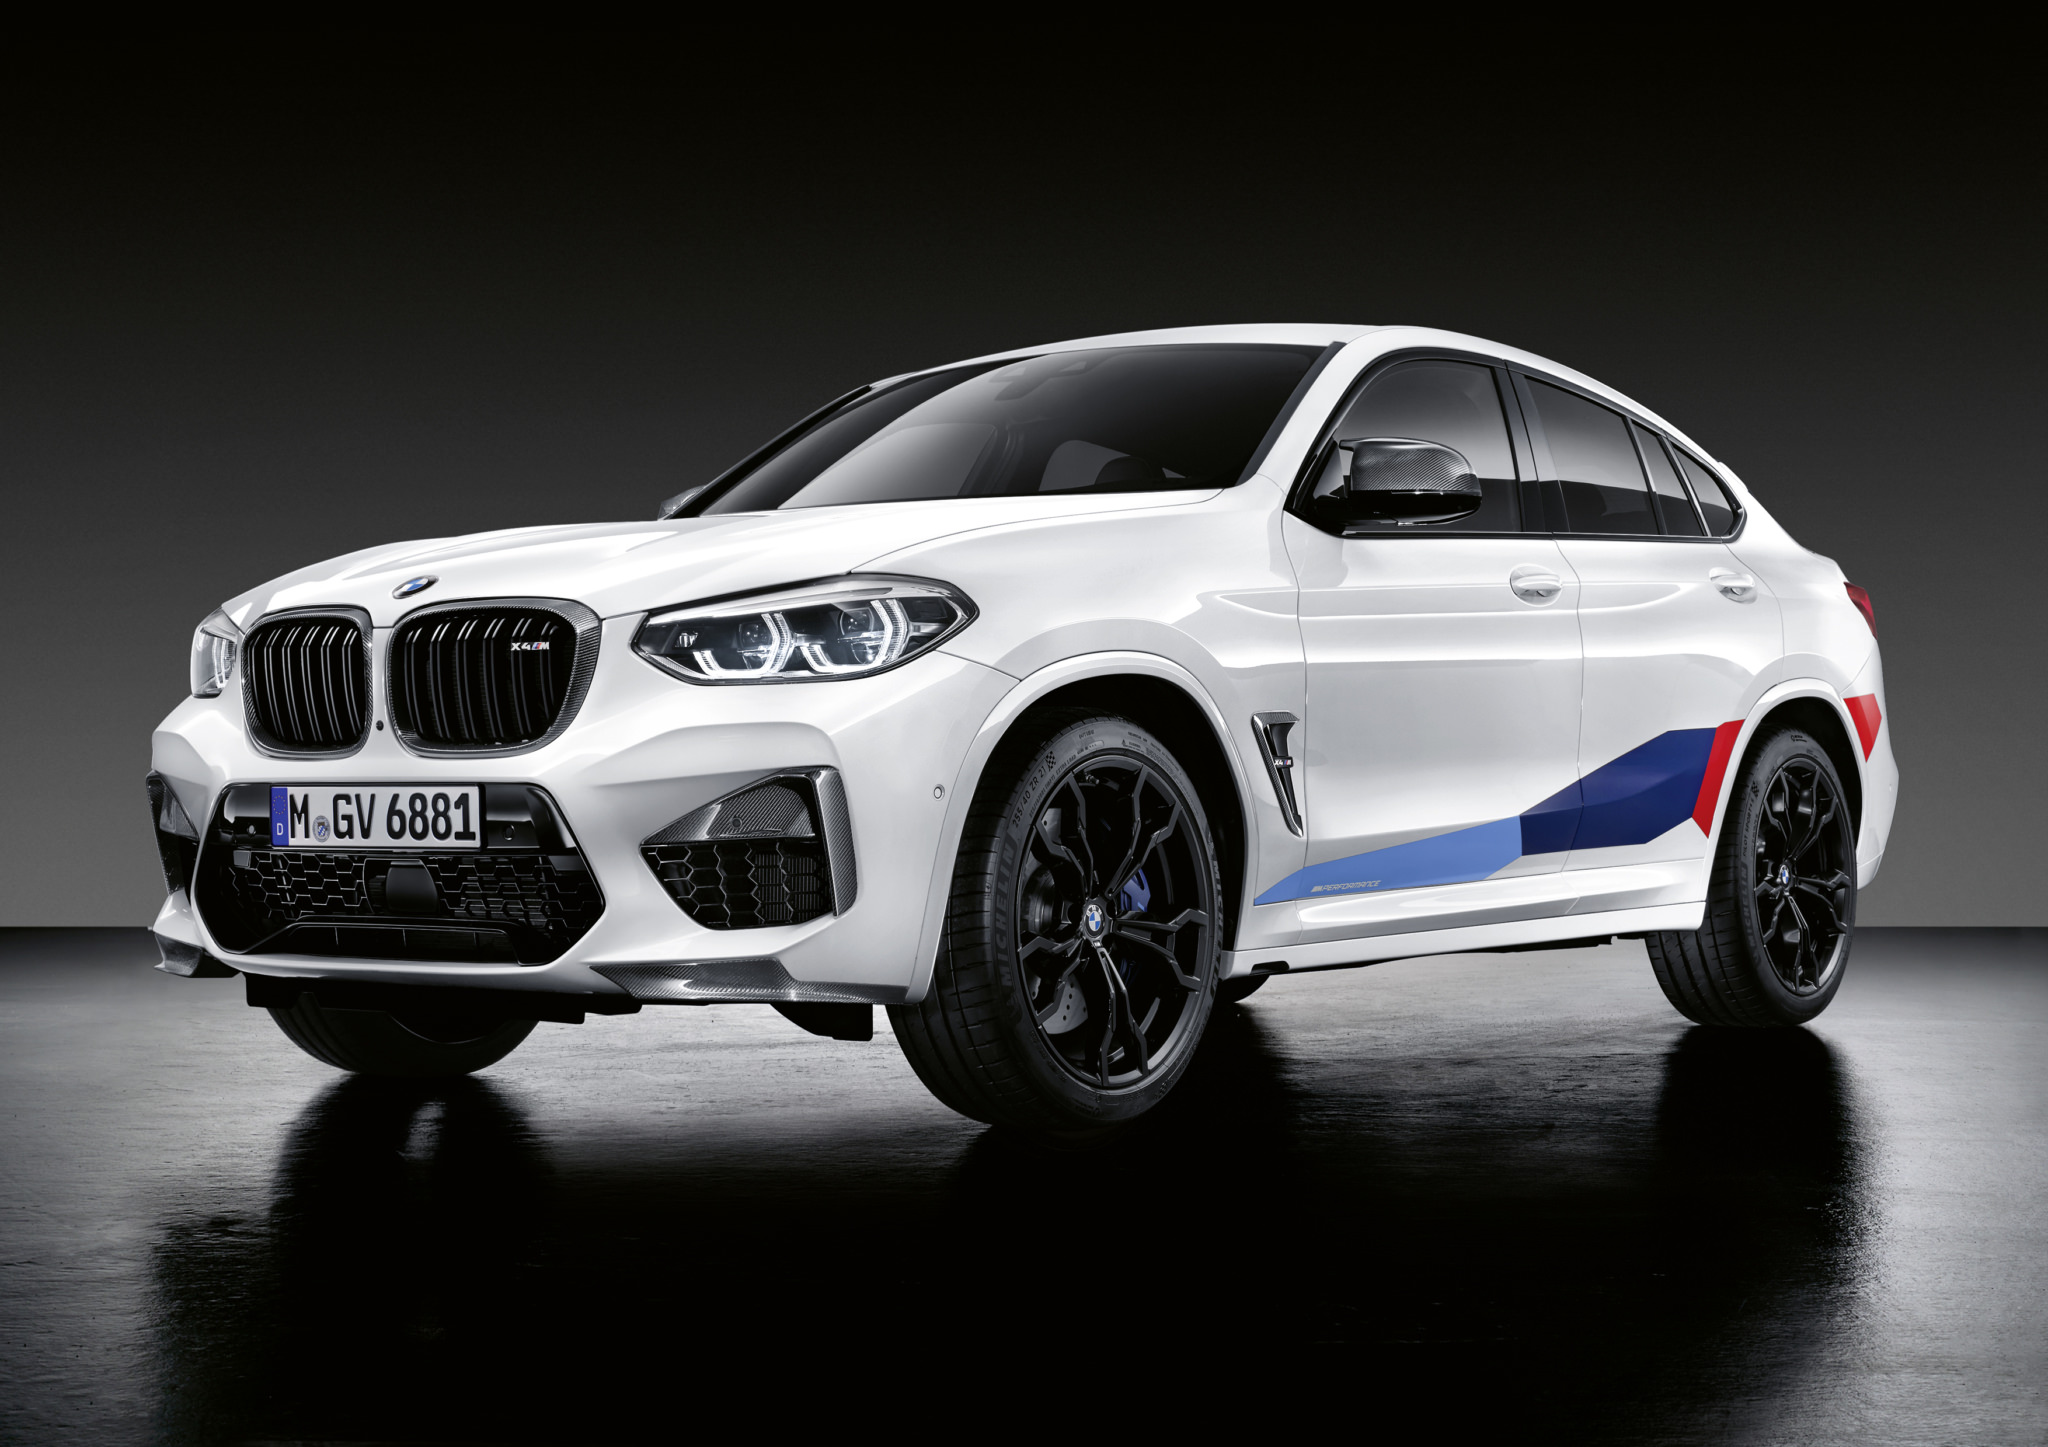 Quel cadeau attend le vainqueur du BMW M Award 2021 ?